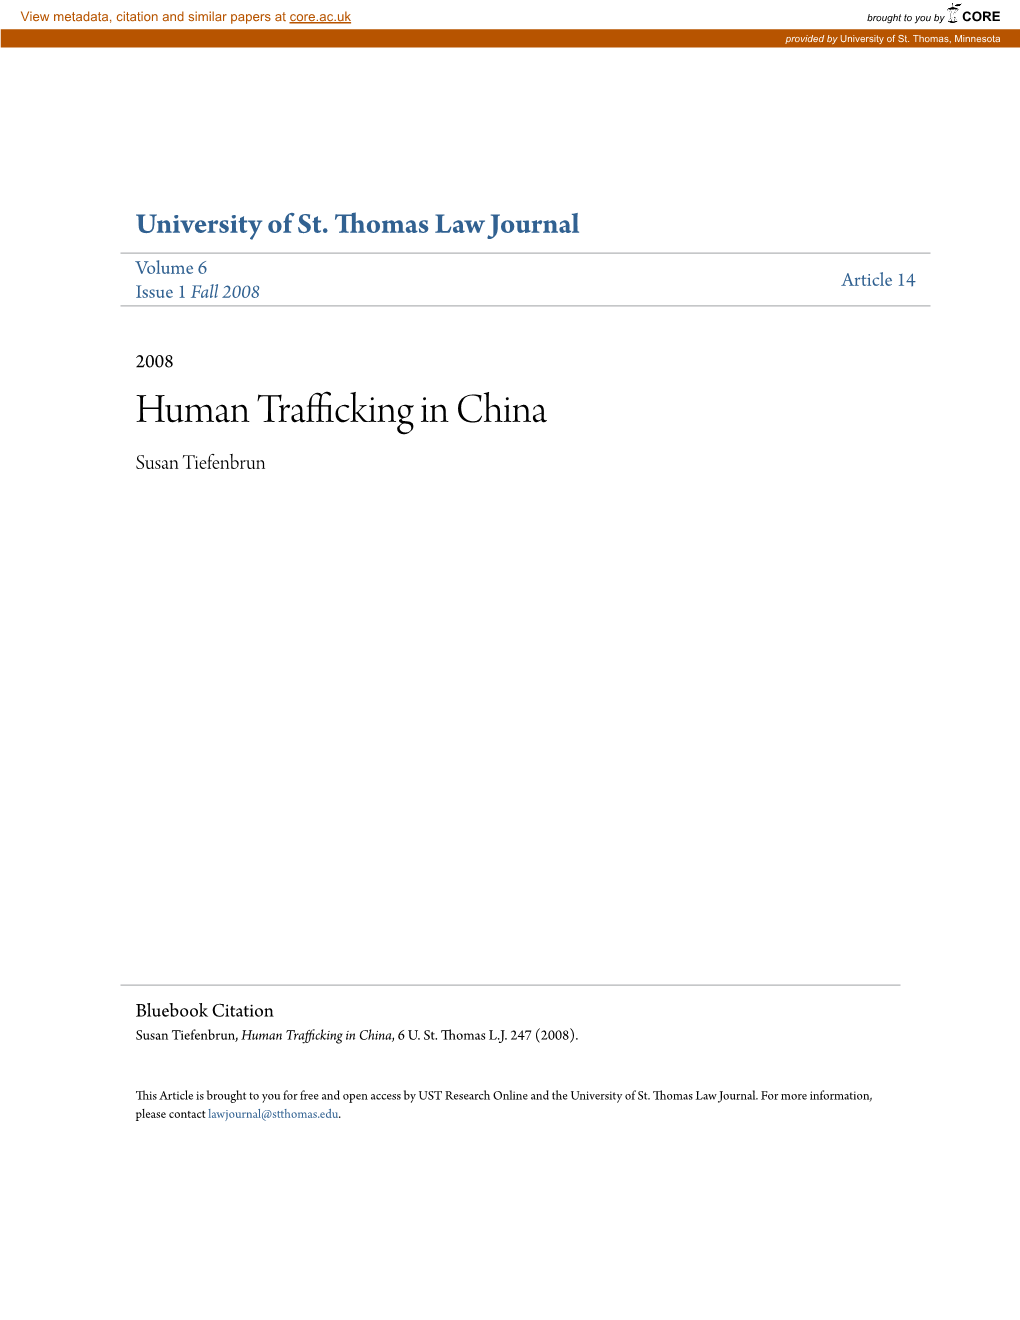 Human Trafficking in China Susan Tiefenbrun